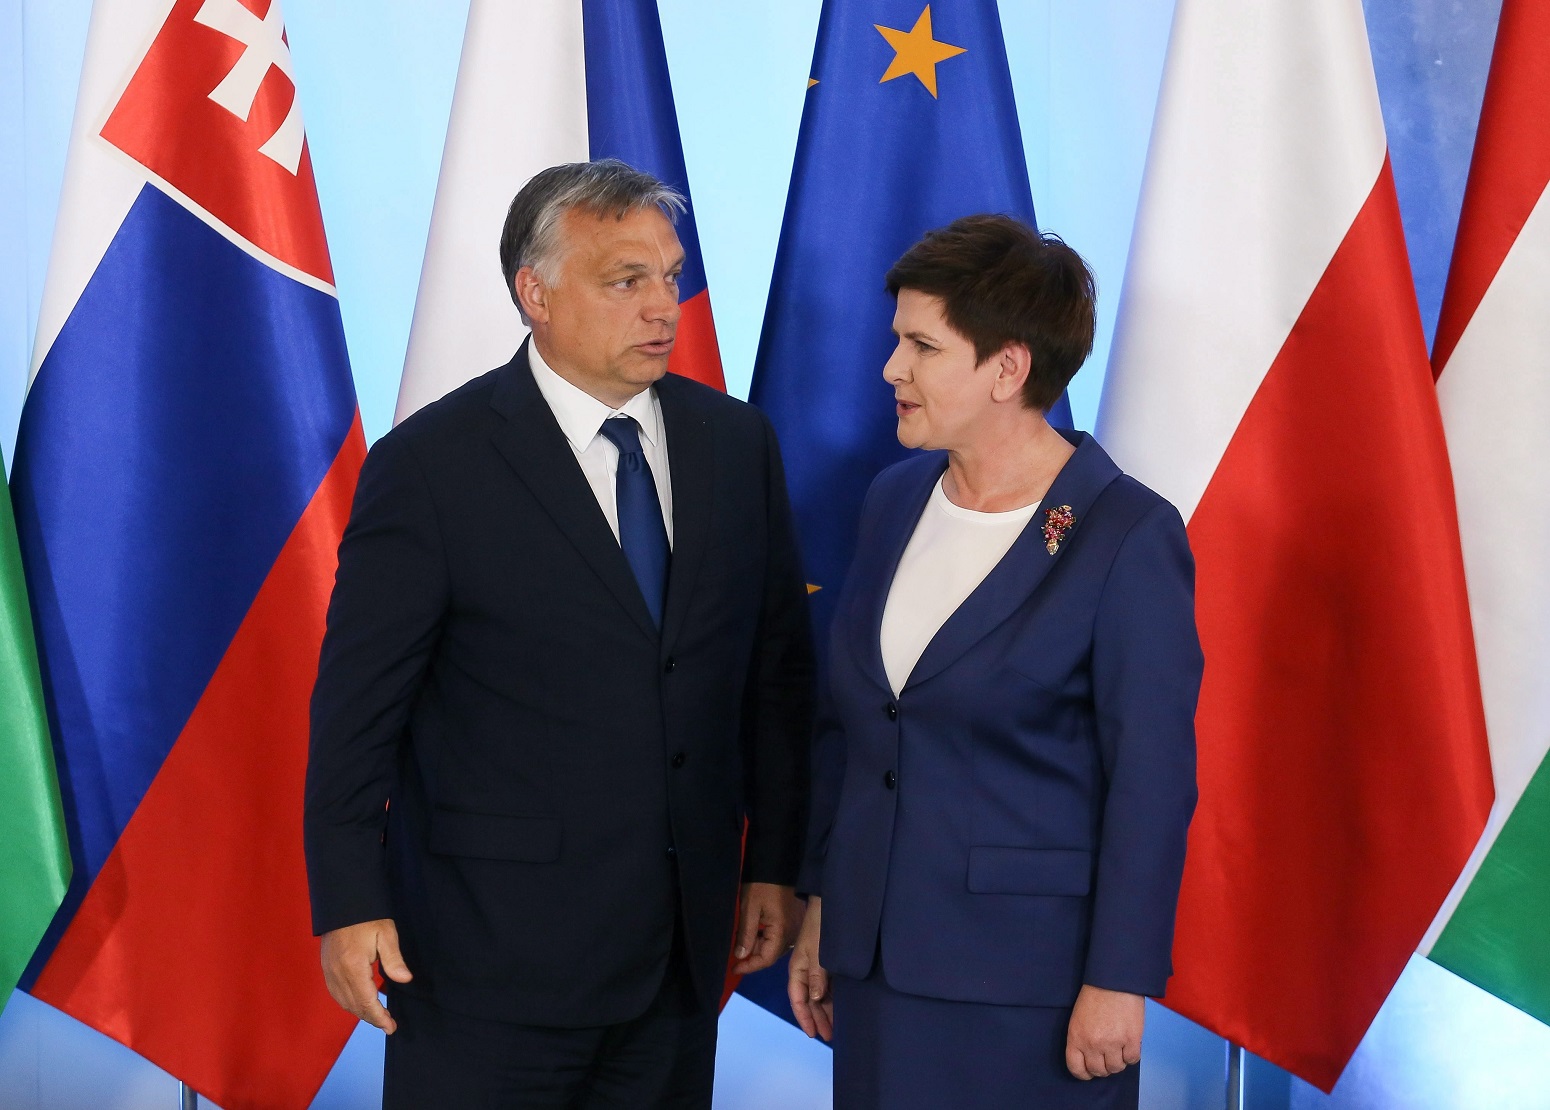 Varsó, 2016. július 21. Beata Szydlo lengyel kormányfõ (j) Orbán Viktor miniszterelnököt üdvözli a visegrádi országok miniszterelnökeinek találkozója elõtt Varsóban 2016. július 21-én. Csehország, Lengyelország, Magyarország és Szlovákia vezetõi többek között a brit népszavazás utáni európai helyzetrõl és az Európai Unió lehetséges megreformálásáról egyeztetnek. (MTI/EPA/Pavel Supernak)